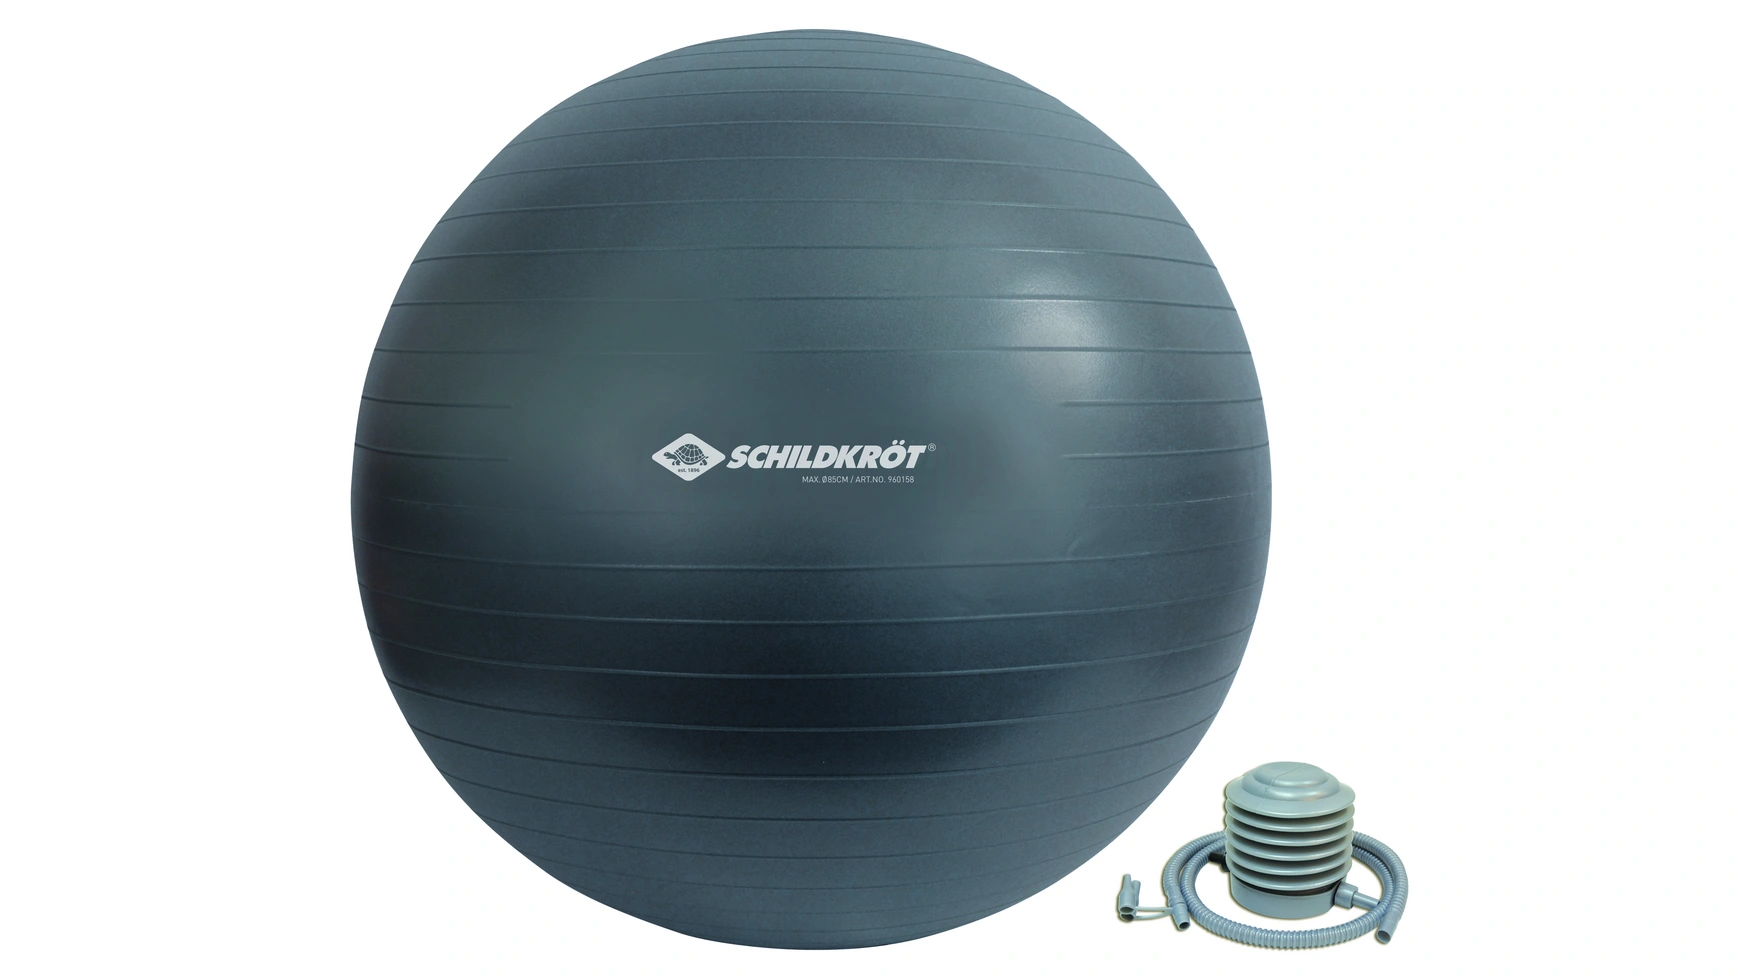 Schildkröt Fitness Мяч для упражнений 85 см, без фталатов, с шариковым насосом, антрацит